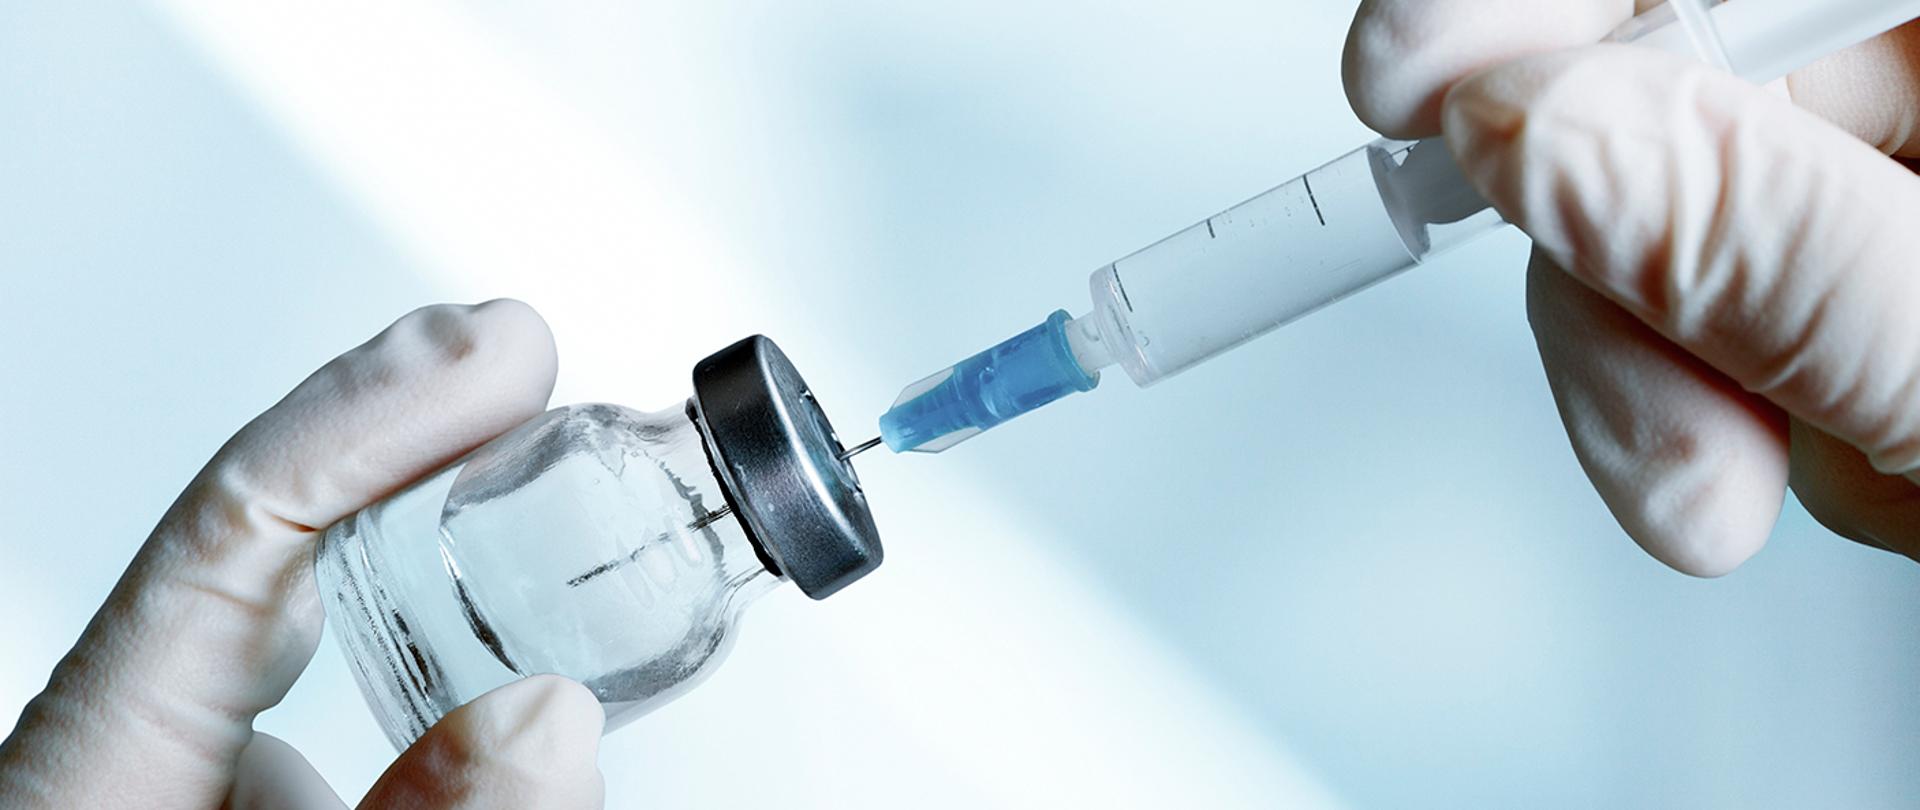 Zdjęcie, na którym widnieje fiolka ze szczepionką oraz strzykawka.